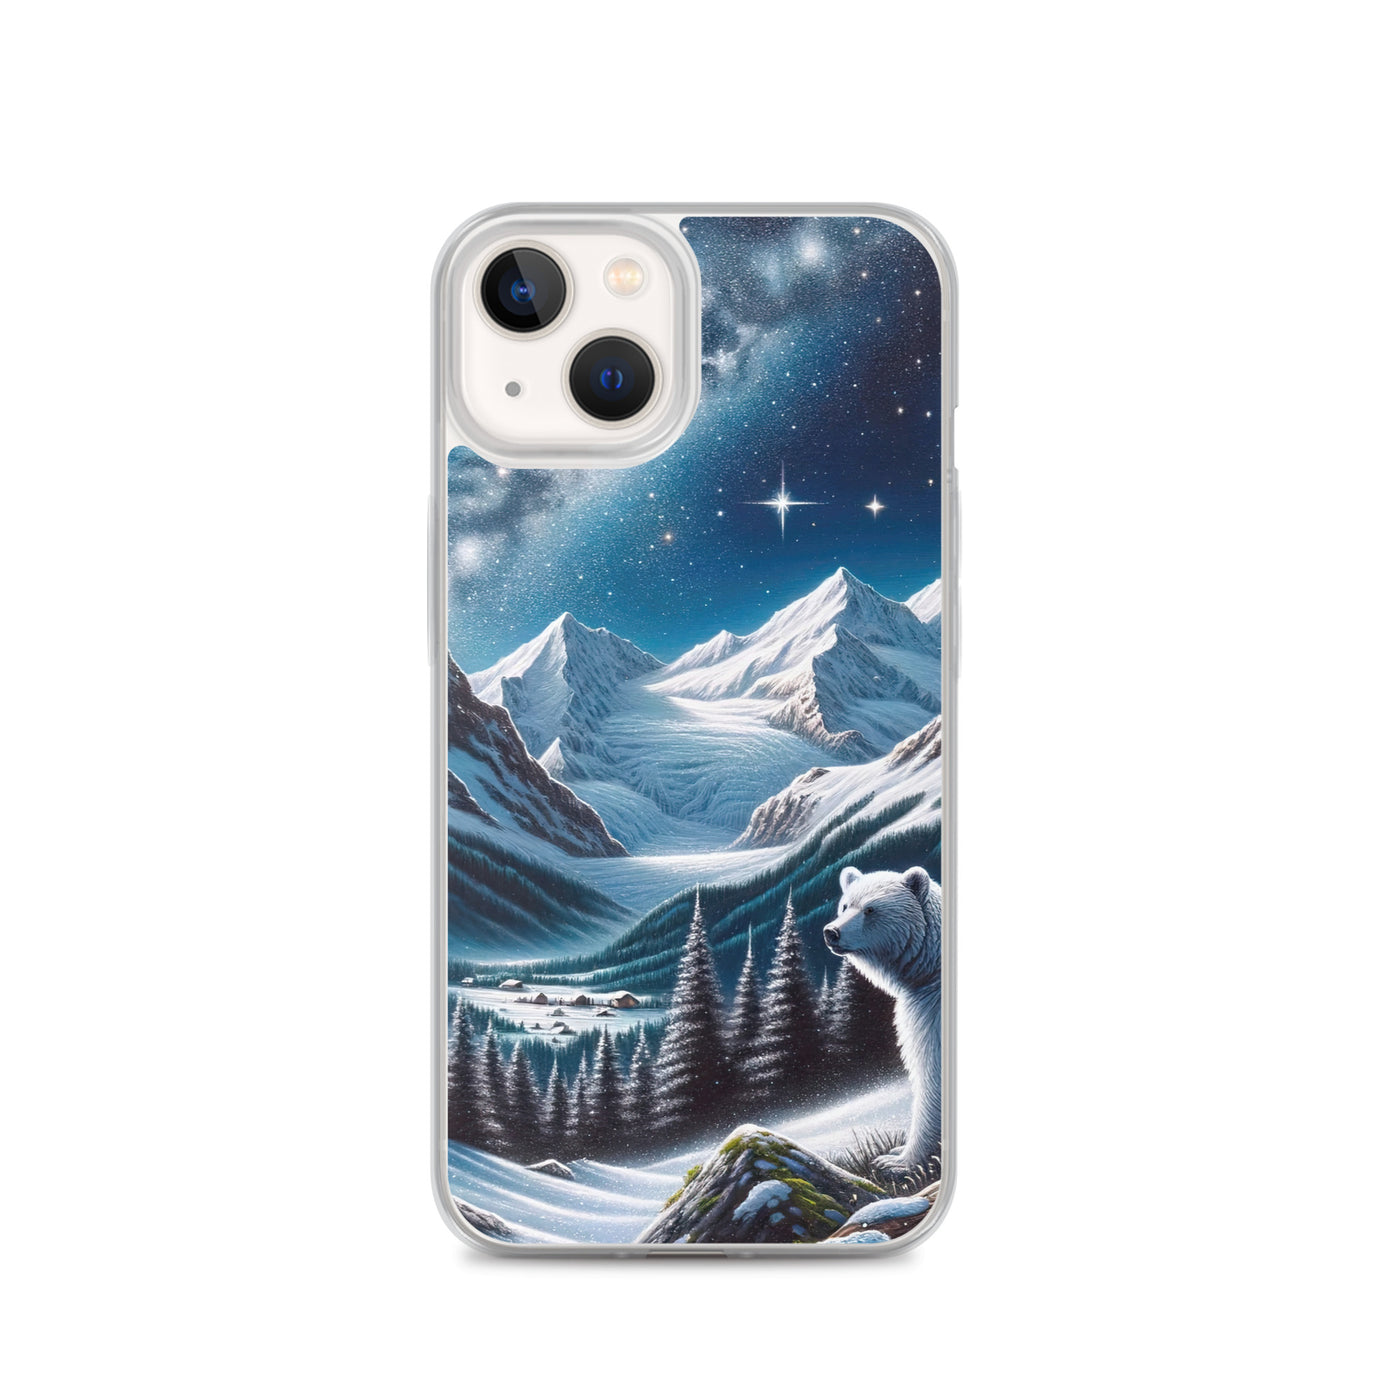 Sternennacht und Eisbär: Acrylgemälde mit Milchstraße, Alpen und schneebedeckte Gipfel - iPhone Schutzhülle (durchsichtig) camping xxx yyy zzz iPhone 13